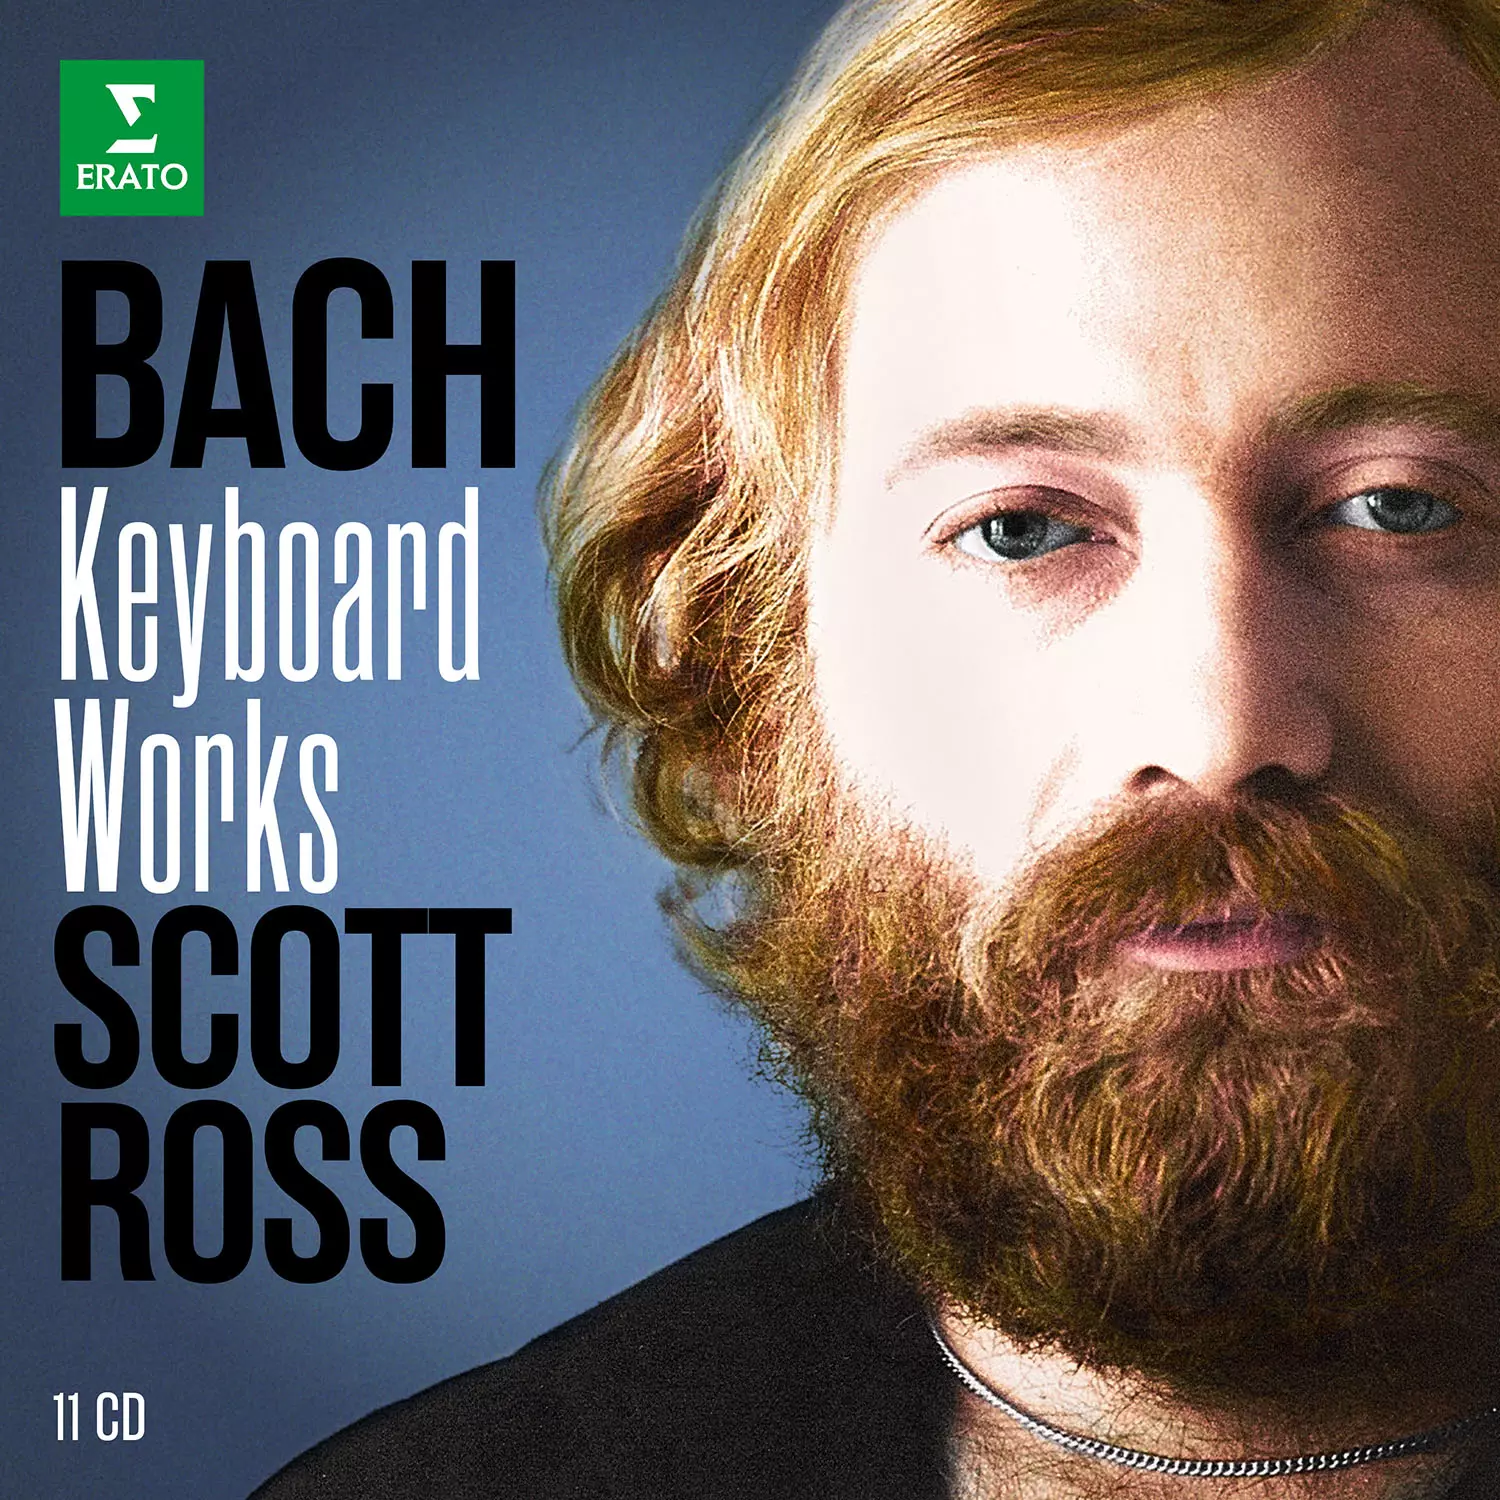 Bach Keyboard Works